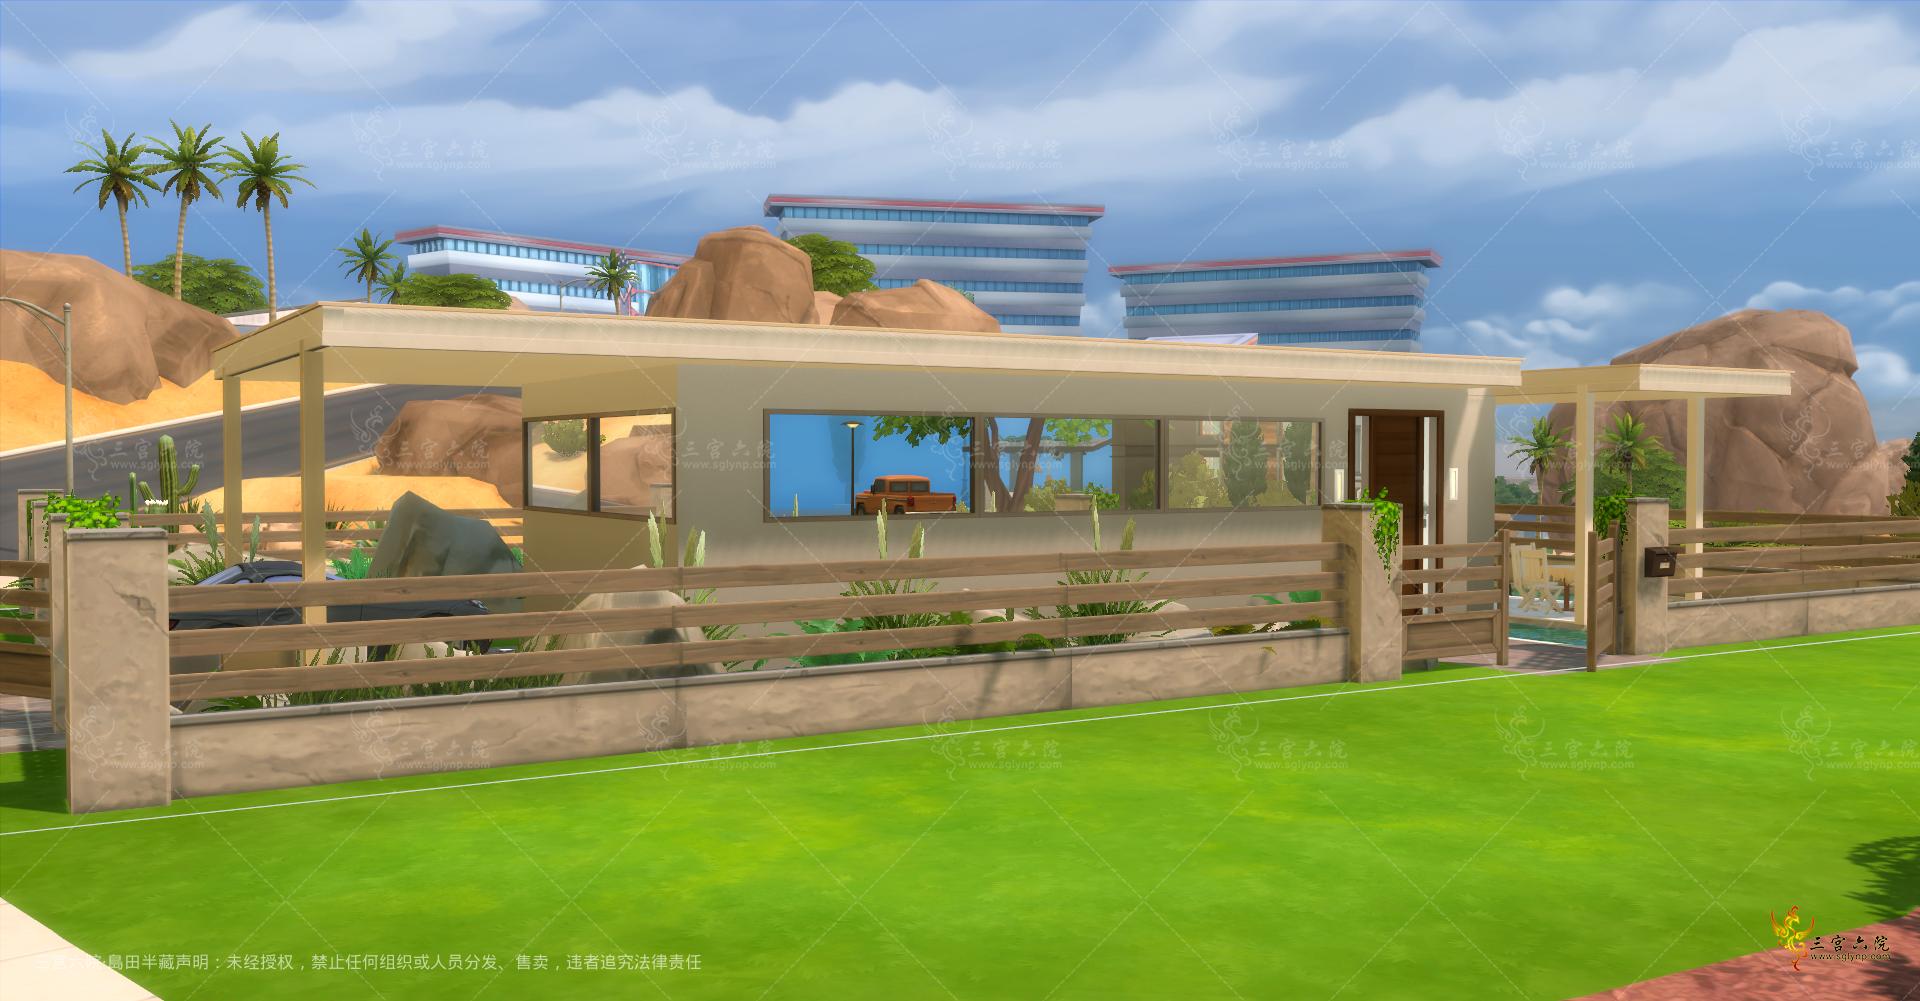 Sims 4 Screenshot 2021.11.22 - 21.59.34.06.png